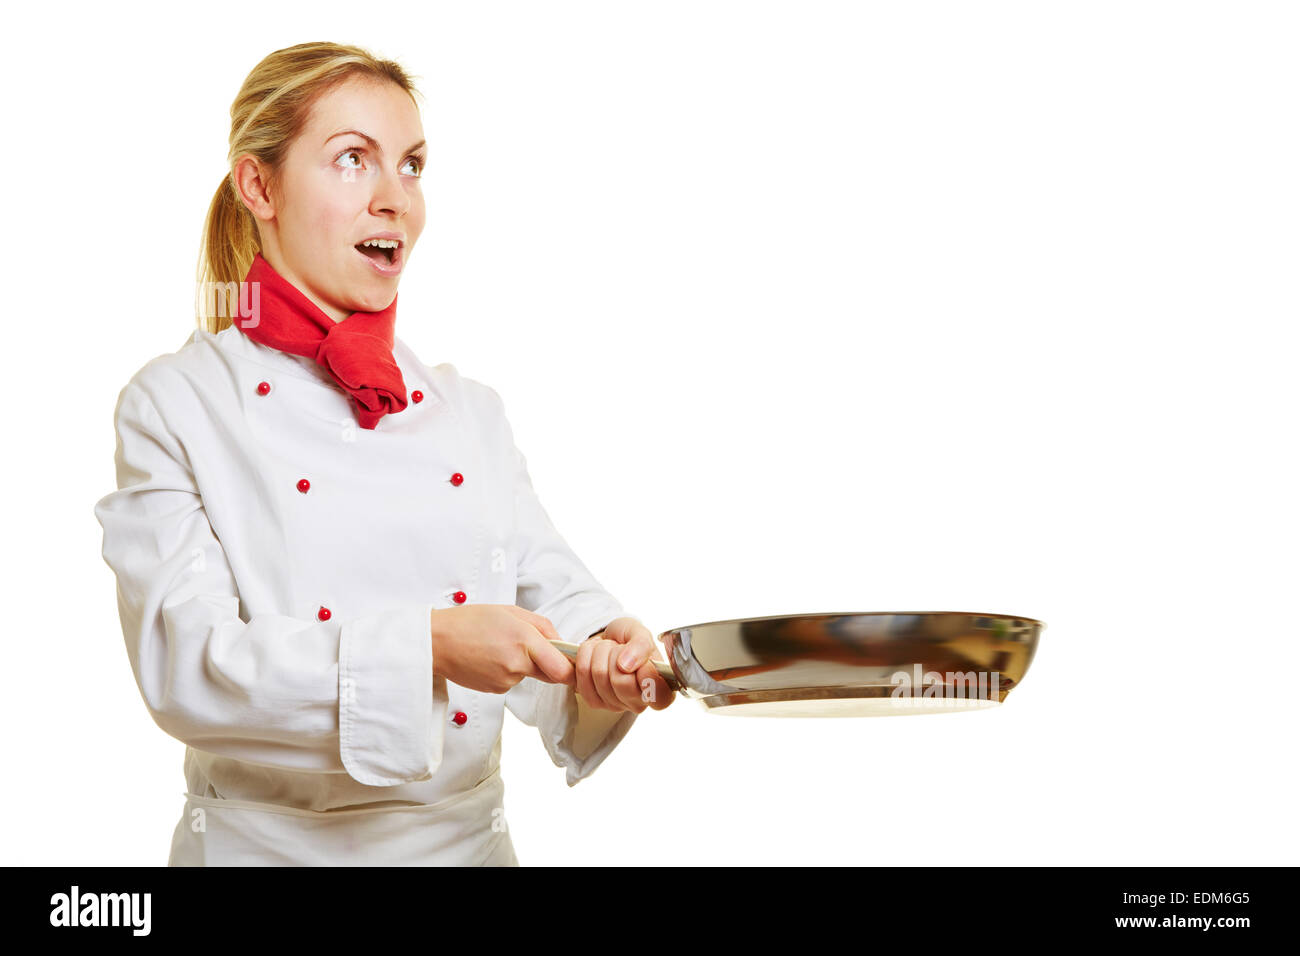 La femme comme chef cuisinier à la surprise tout en friture avec une casserole Banque D'Images